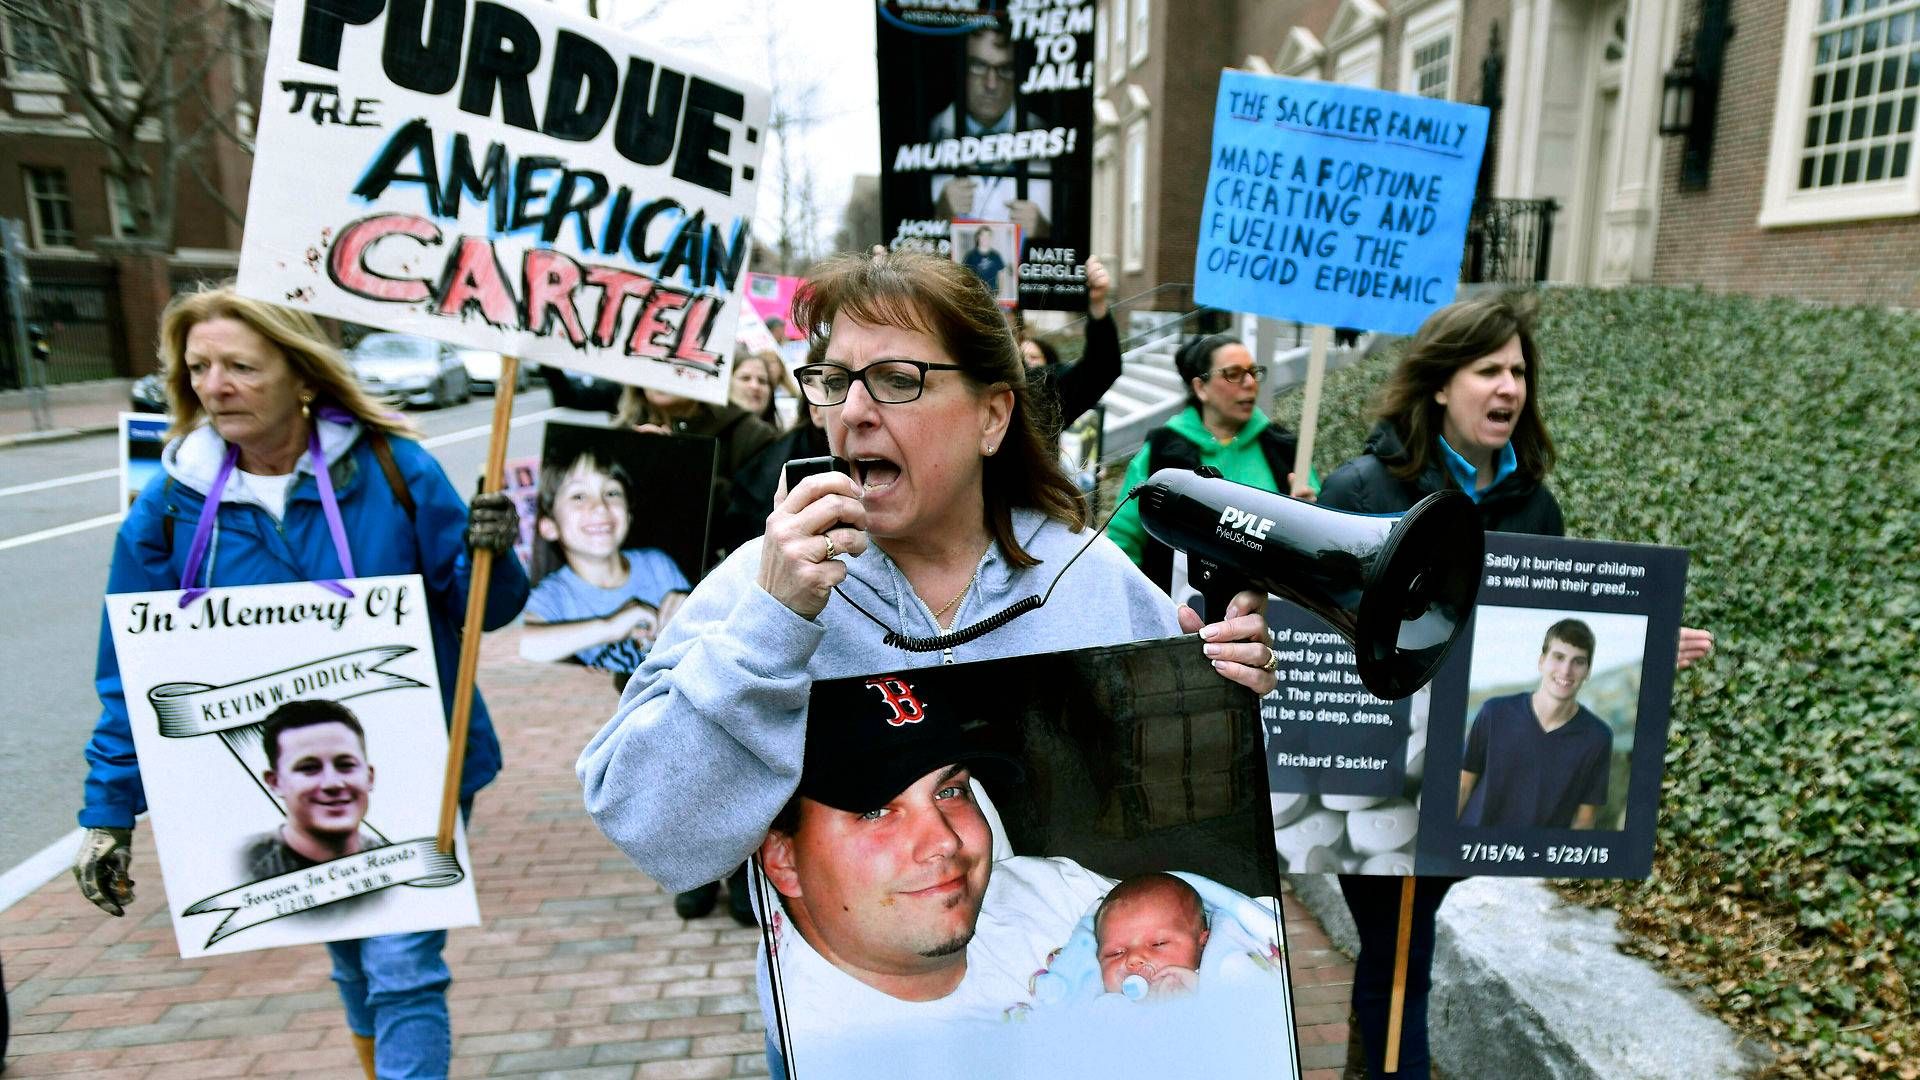 Protesterne over Sackler-familiens indtjening på Purdues opioidsalg er vokset støt i USA. | Foto: Josh Reynolds/AP/Ritzau Scanpix